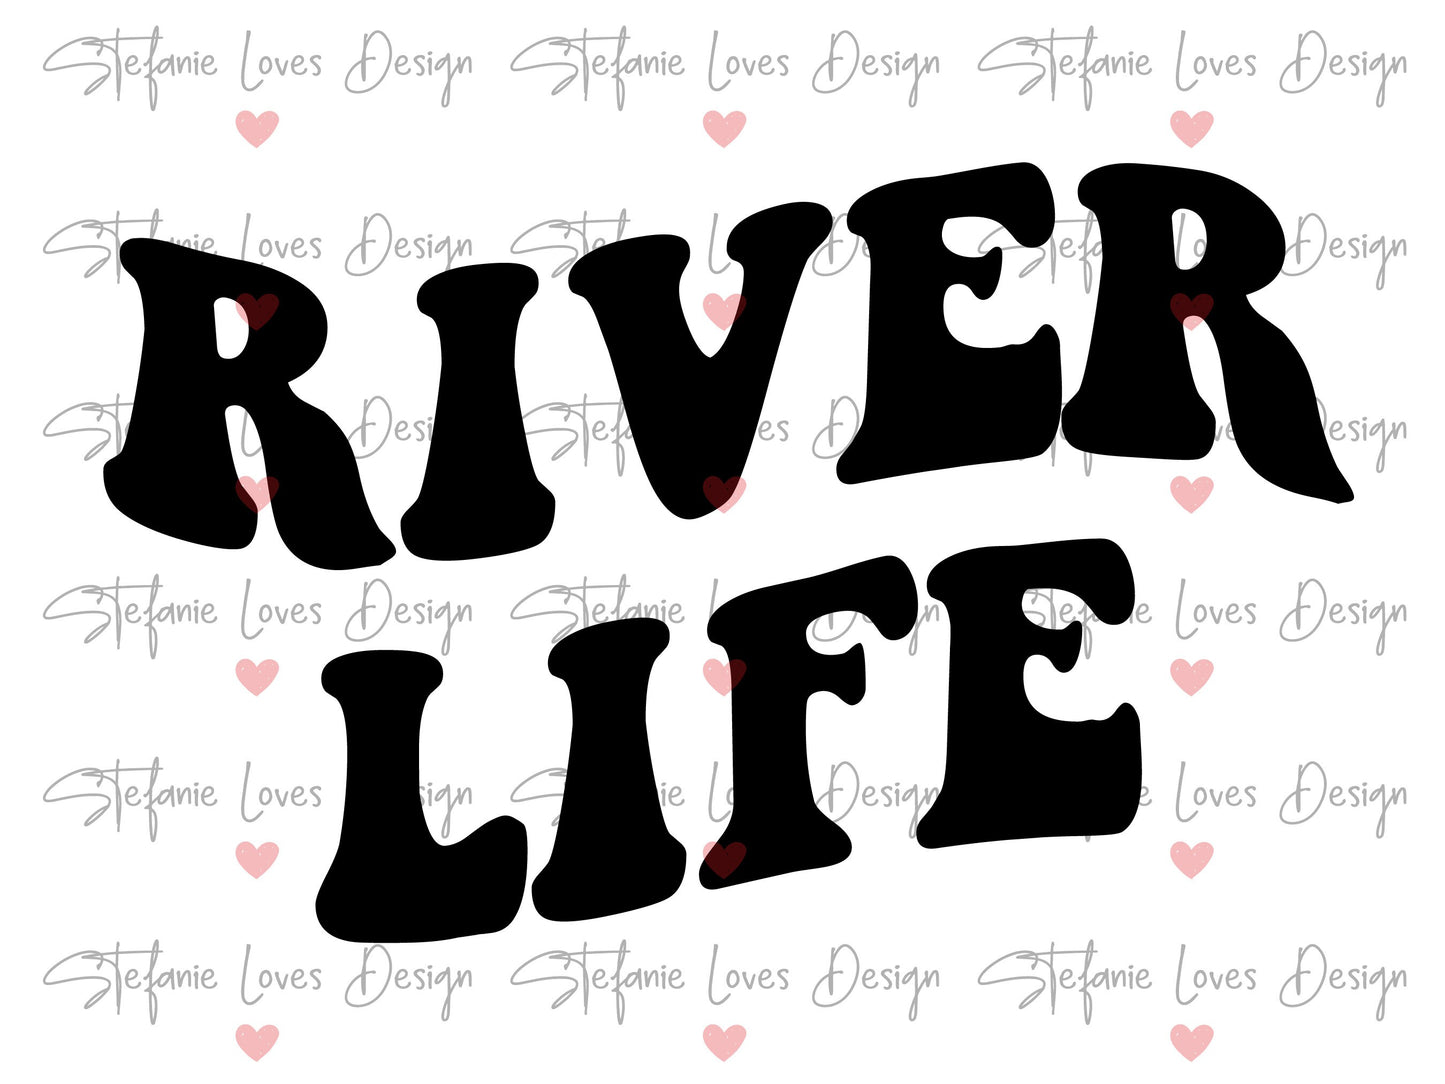 River Life svg, Wavy Letters Svg, Digital Design